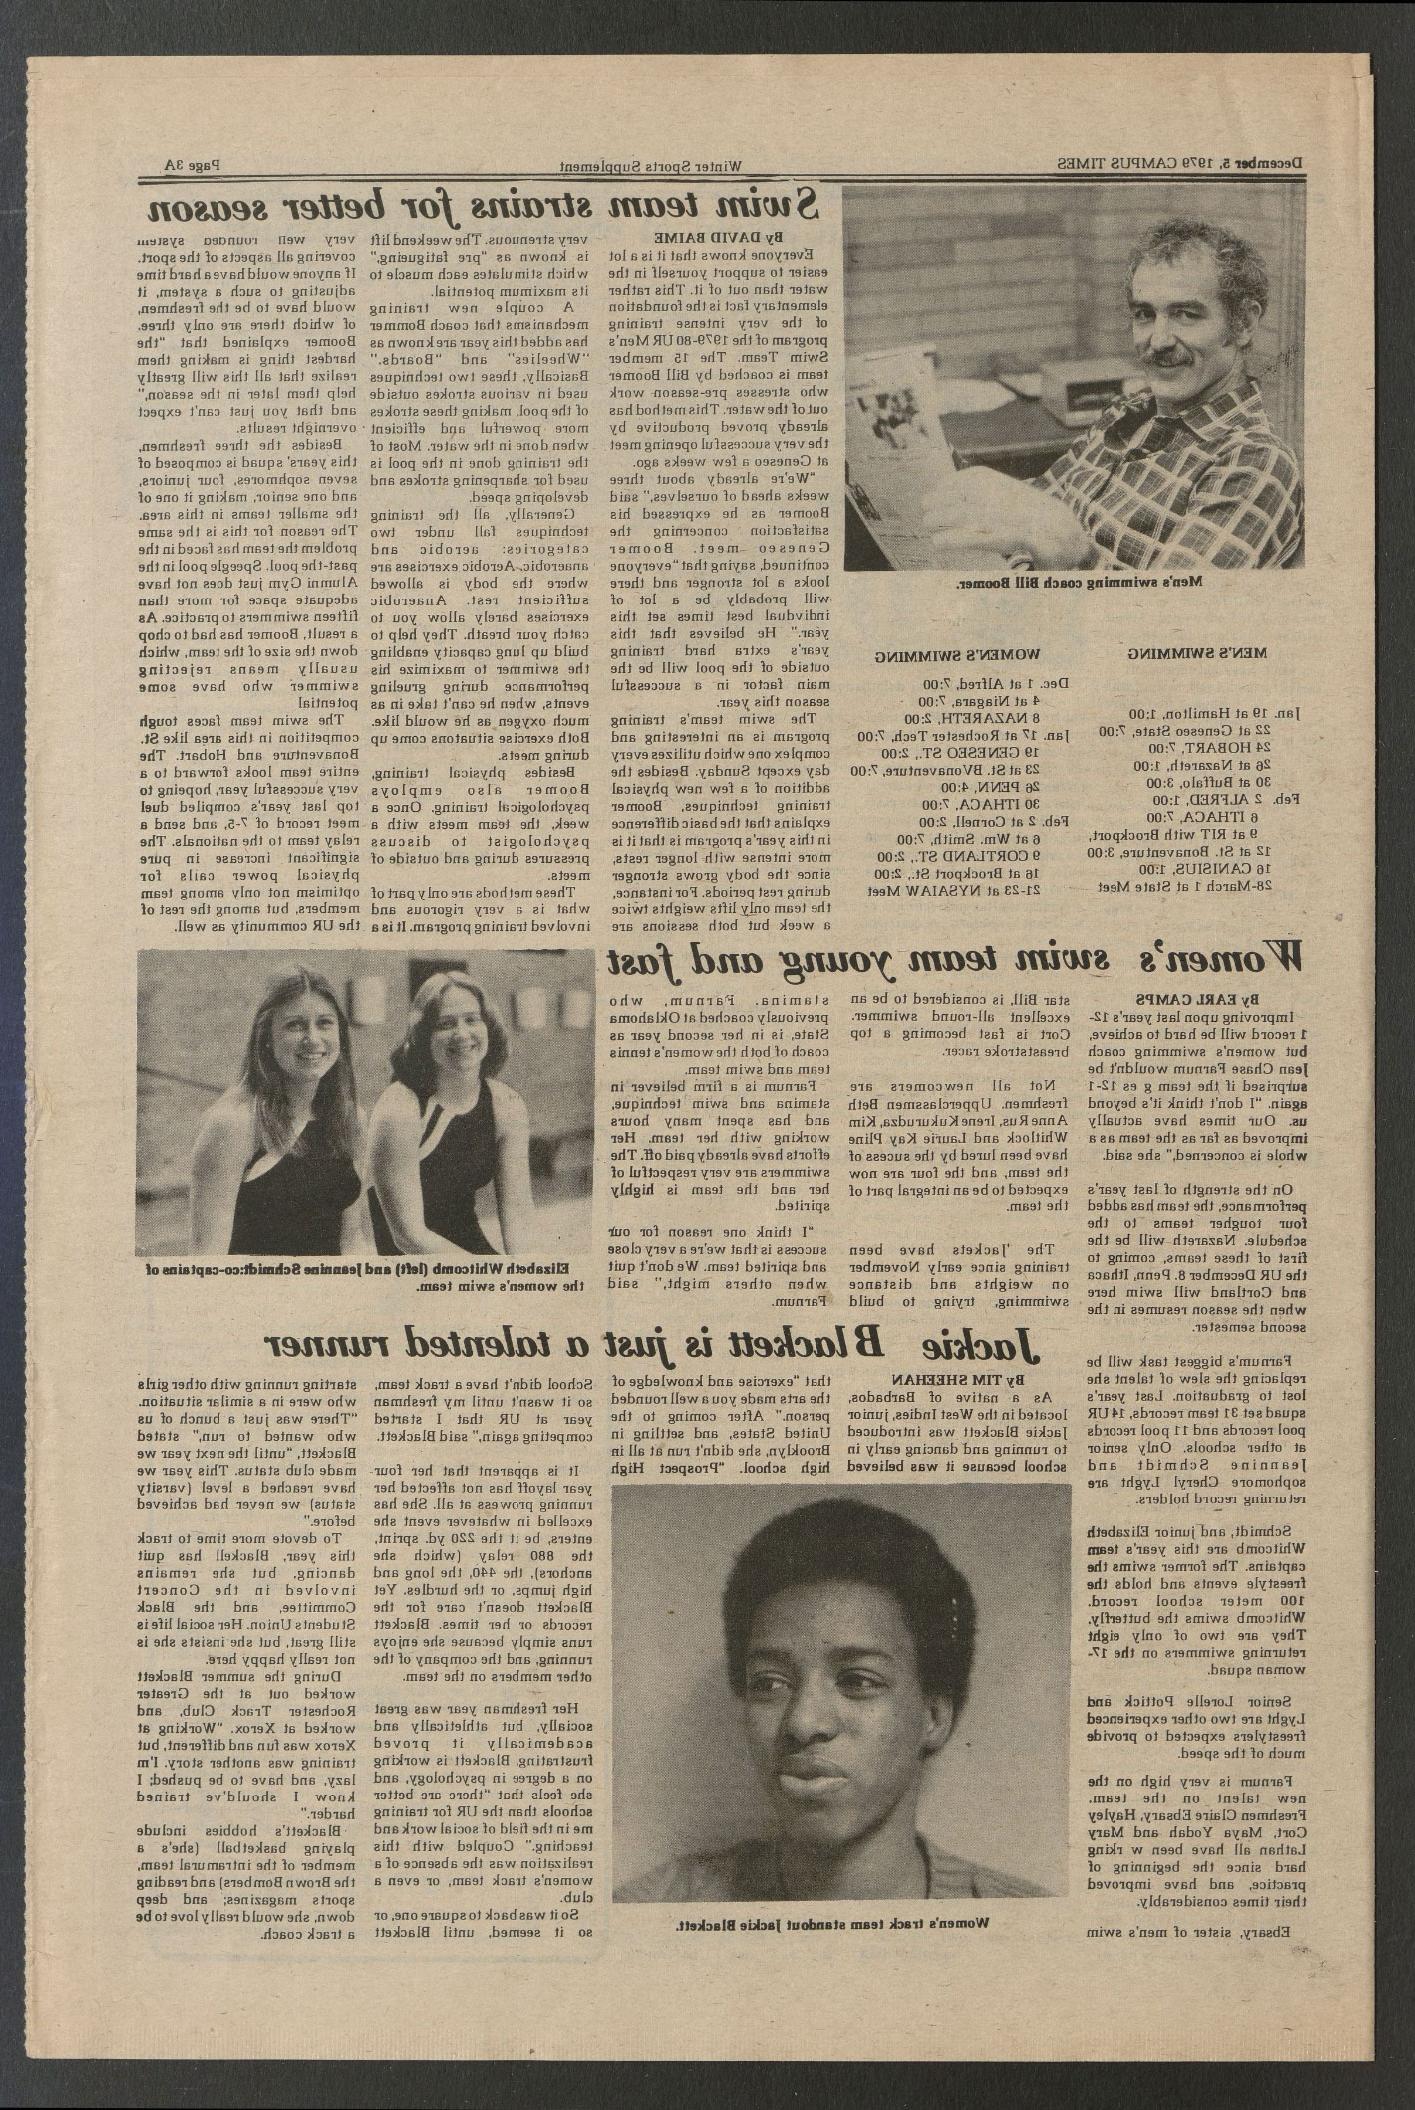 1979年12月12日，《校园时报》刊登了一篇关于杰基·布莱克特的文章.